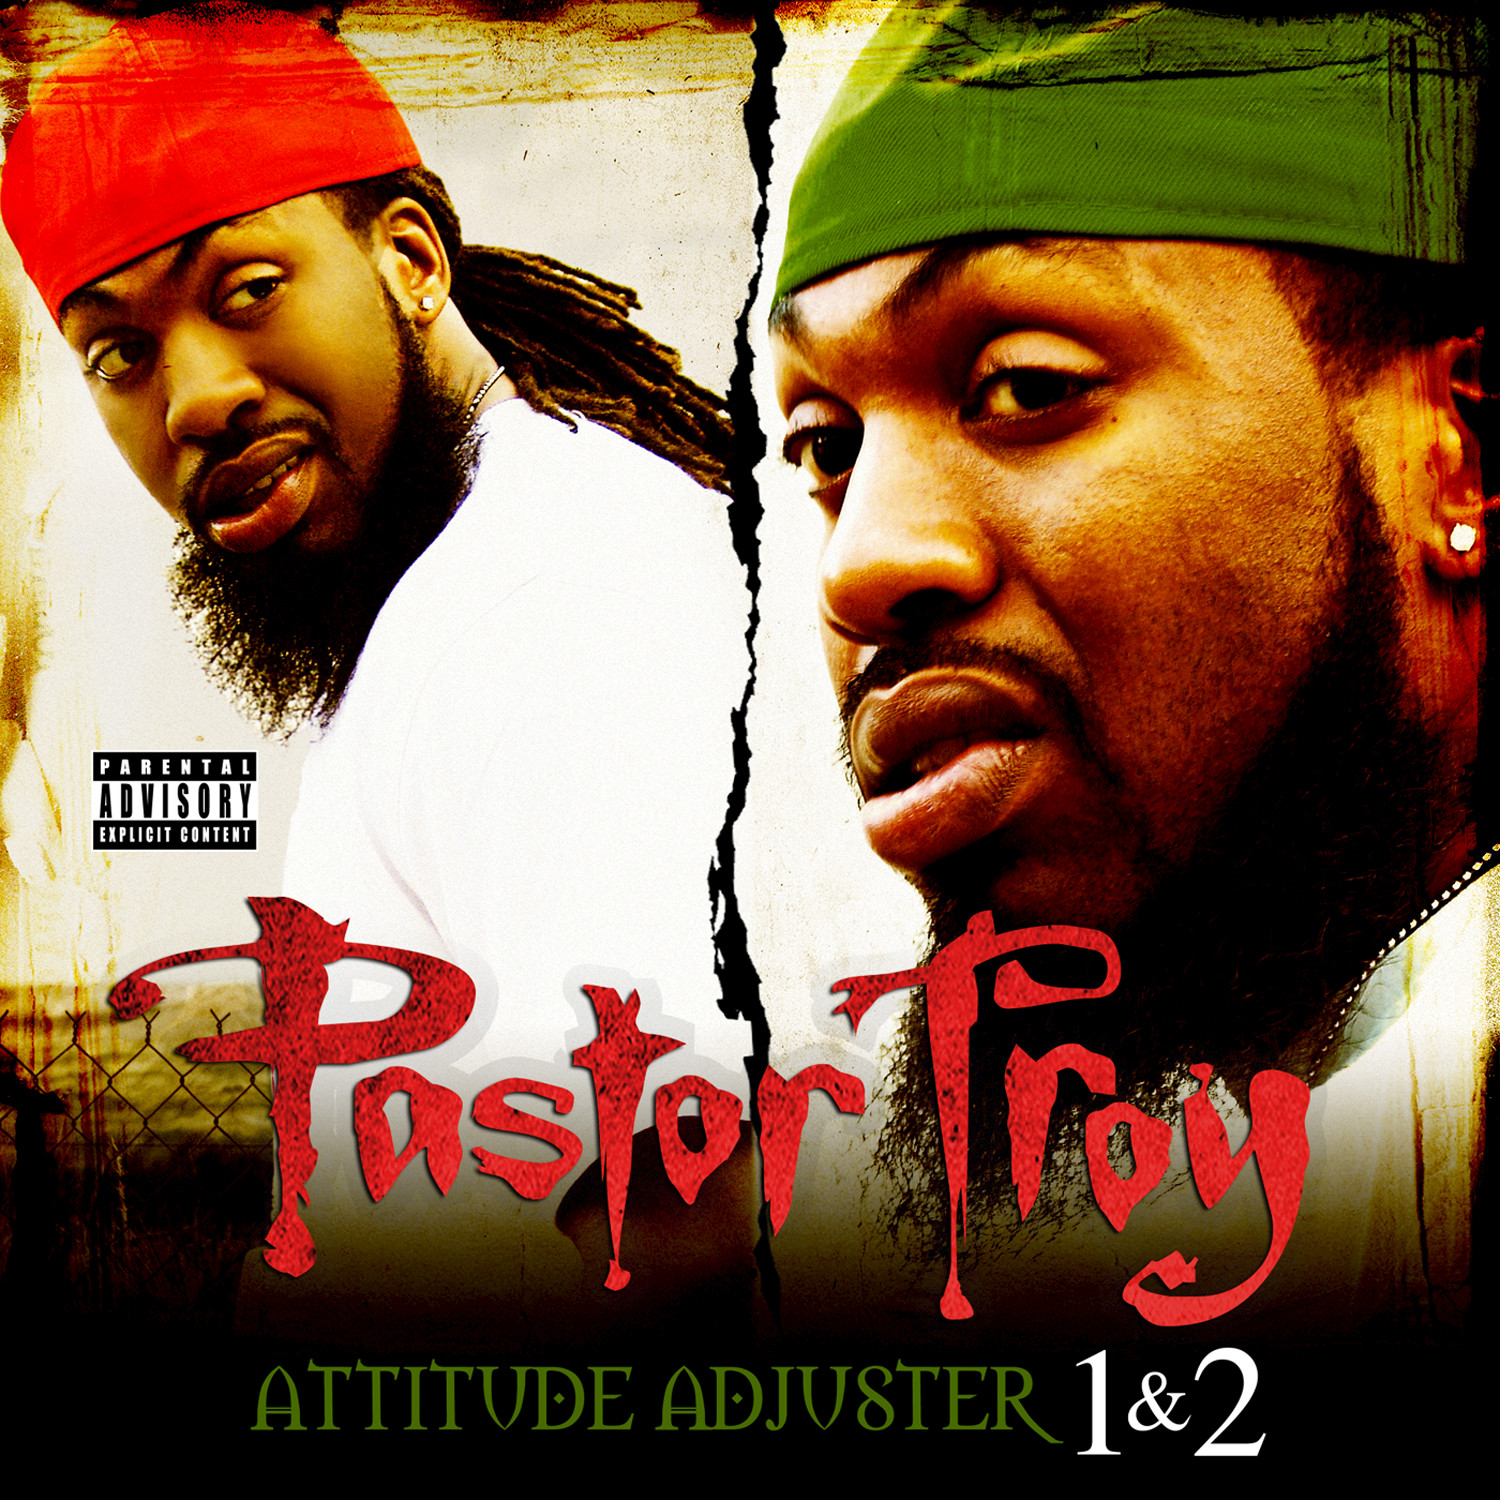 Attitude Adjuster 1 & 2 (Deluxe Edition)